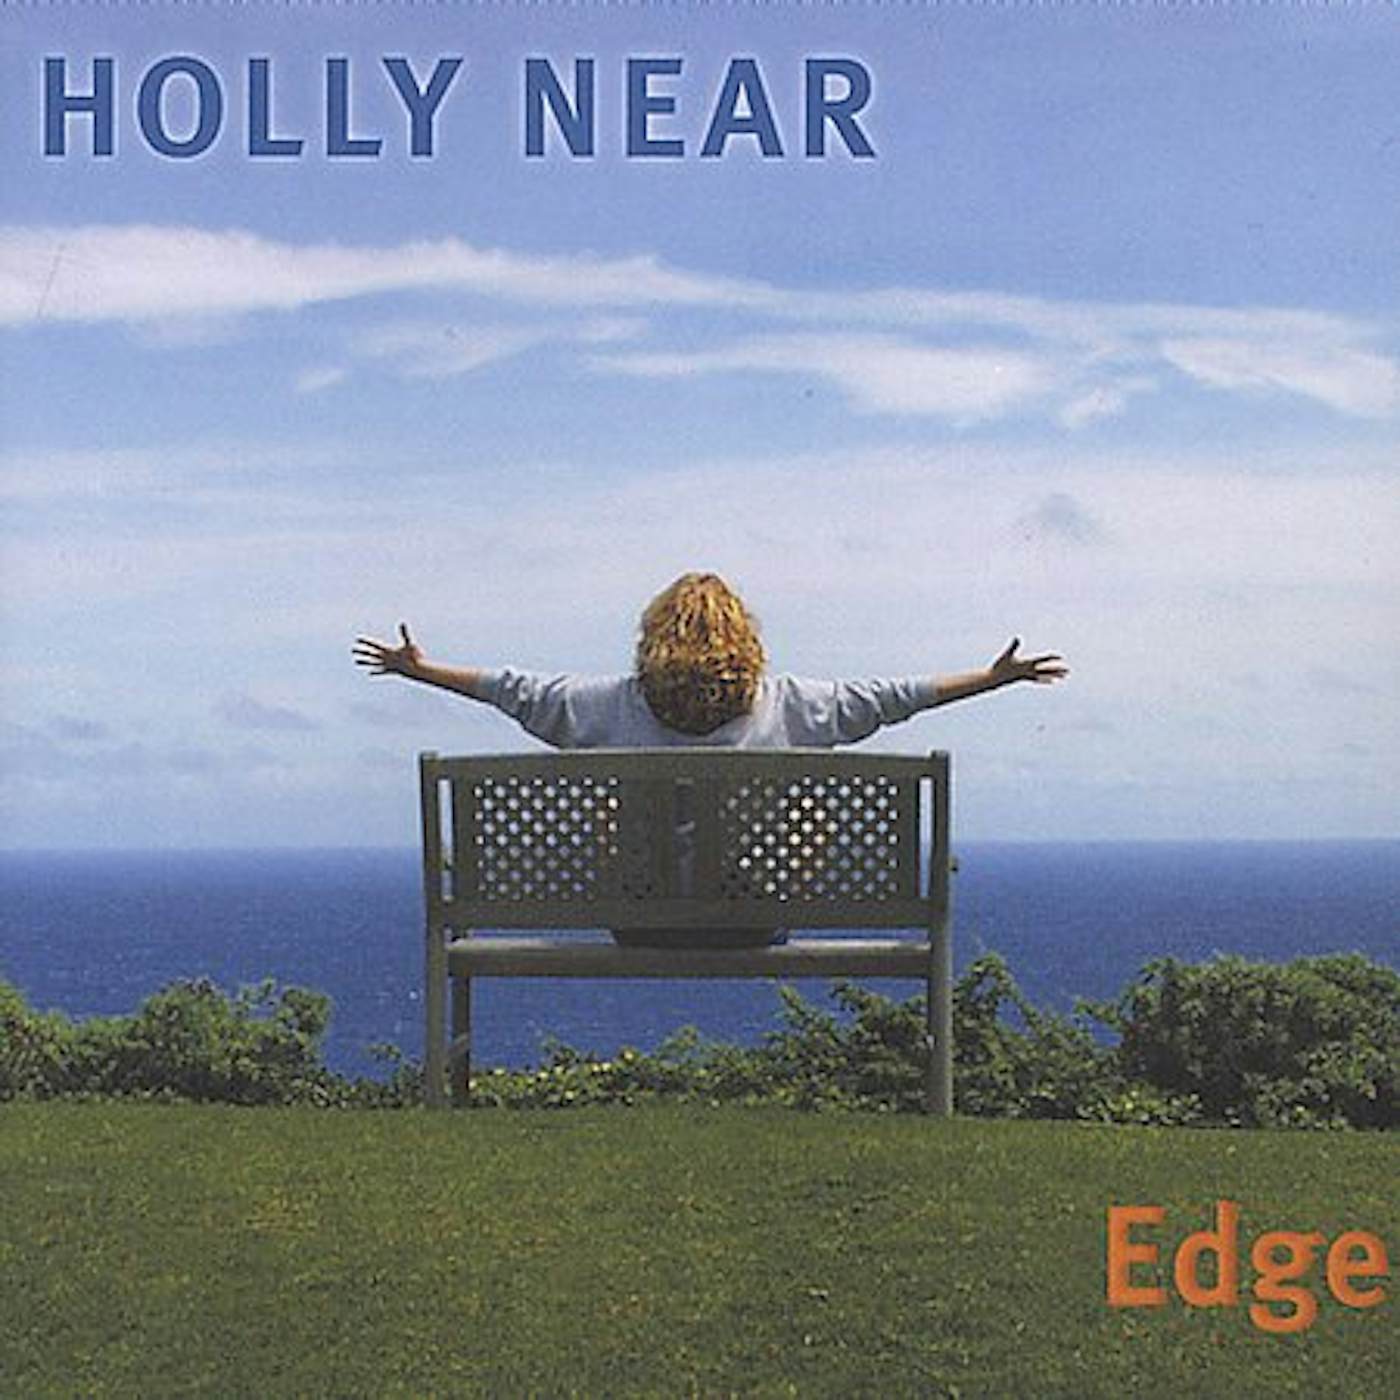 Holly Near EDGE CD